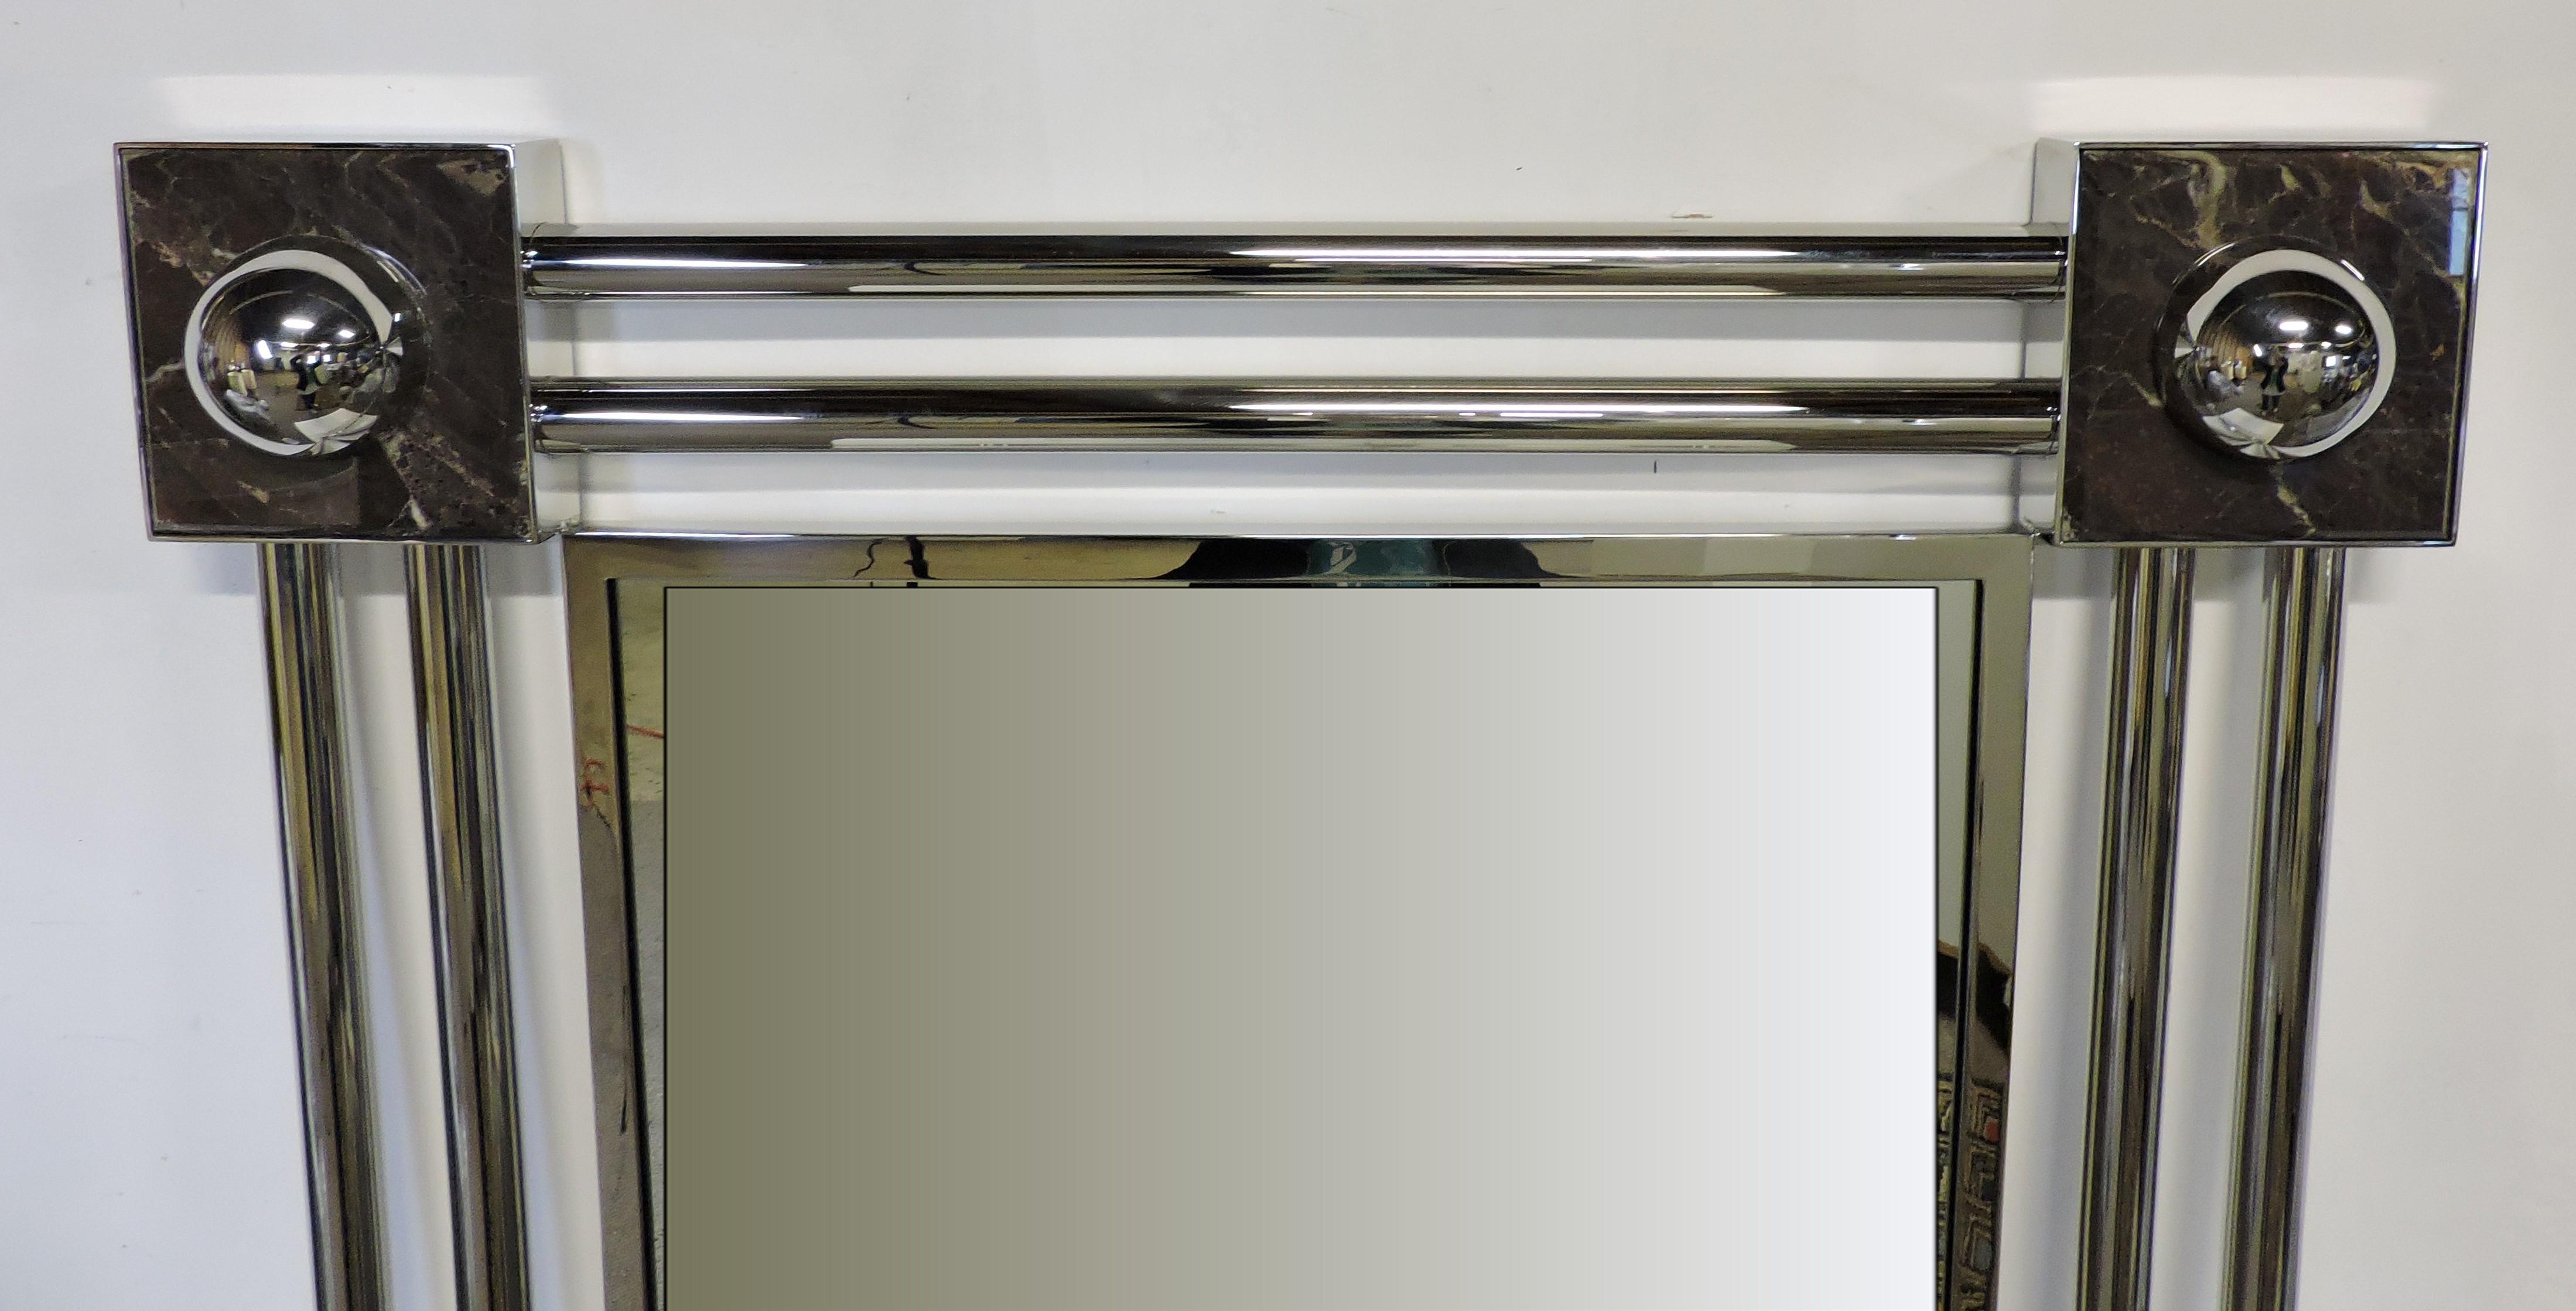 Miroir Reflection Two d'une beauté saisissante, conçu par J. Wade Beam et fabriqué par Brueton, fabricant de meubles haut de gamme. Ce grand miroir a un cadre en tube d'acier inoxydable poli avec des accents de marbre dans les quatre coins.